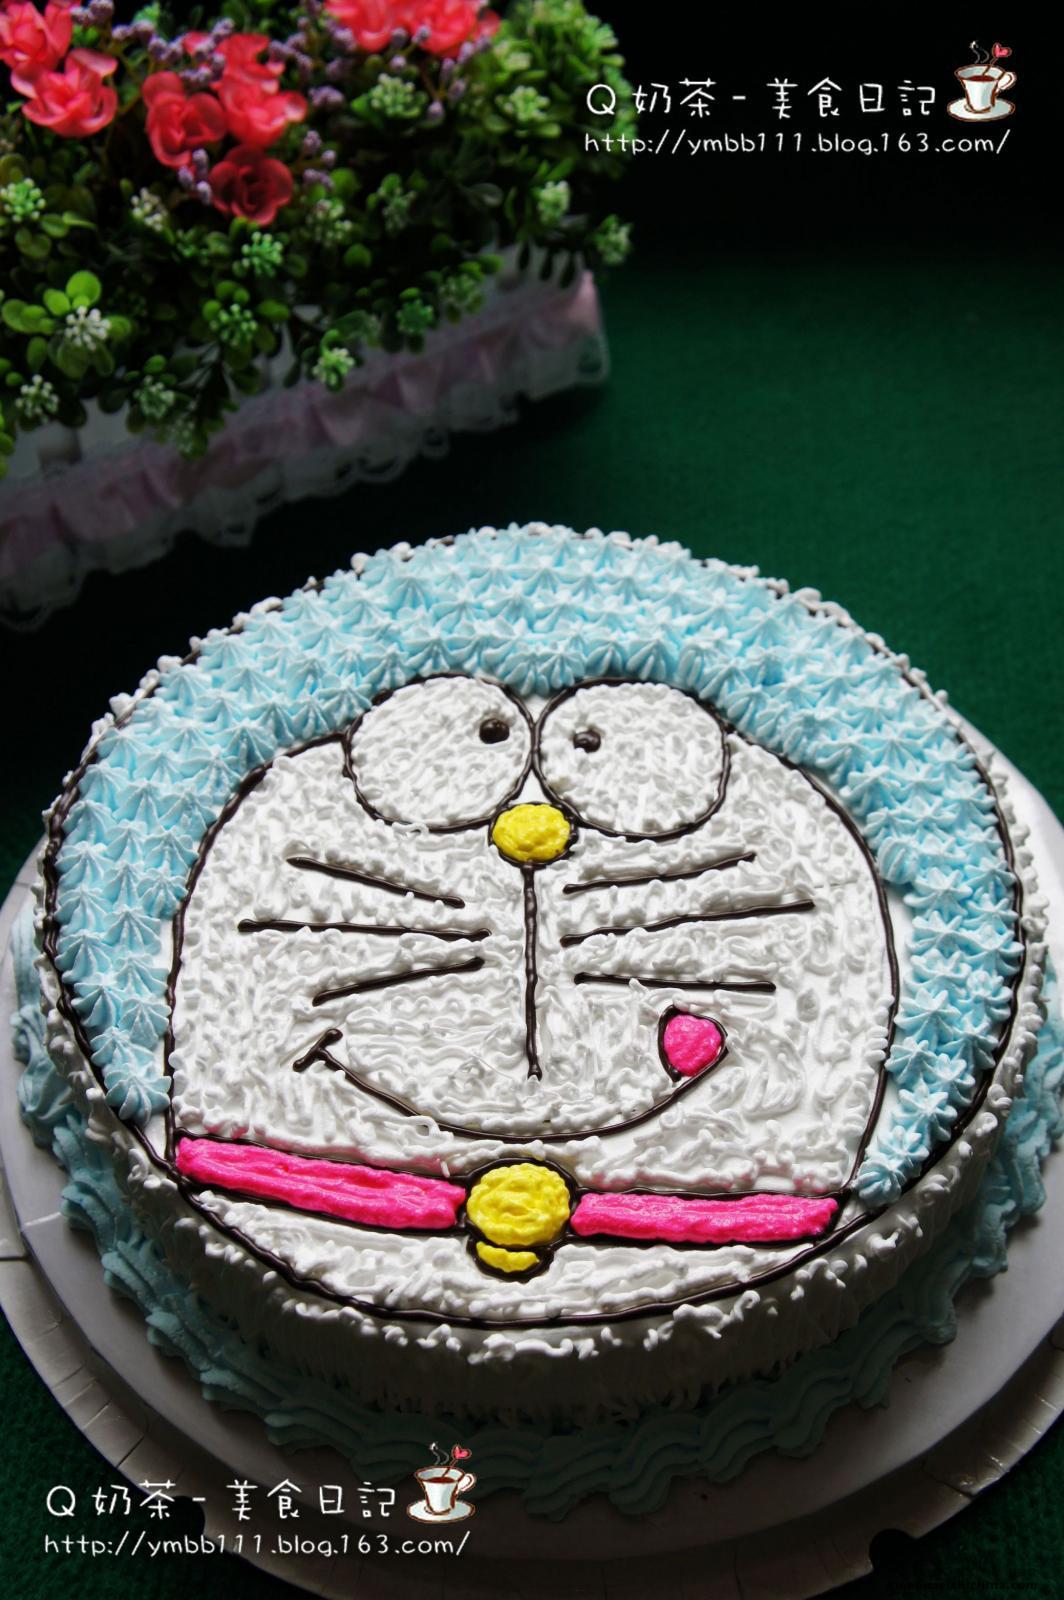 与他的生日快乐蛋糕的猫 库存图片. 图片 包括有 幽默, 宠物, 程序包, 生日, 蜡烛, 敌意, 蓬松 - 33461199